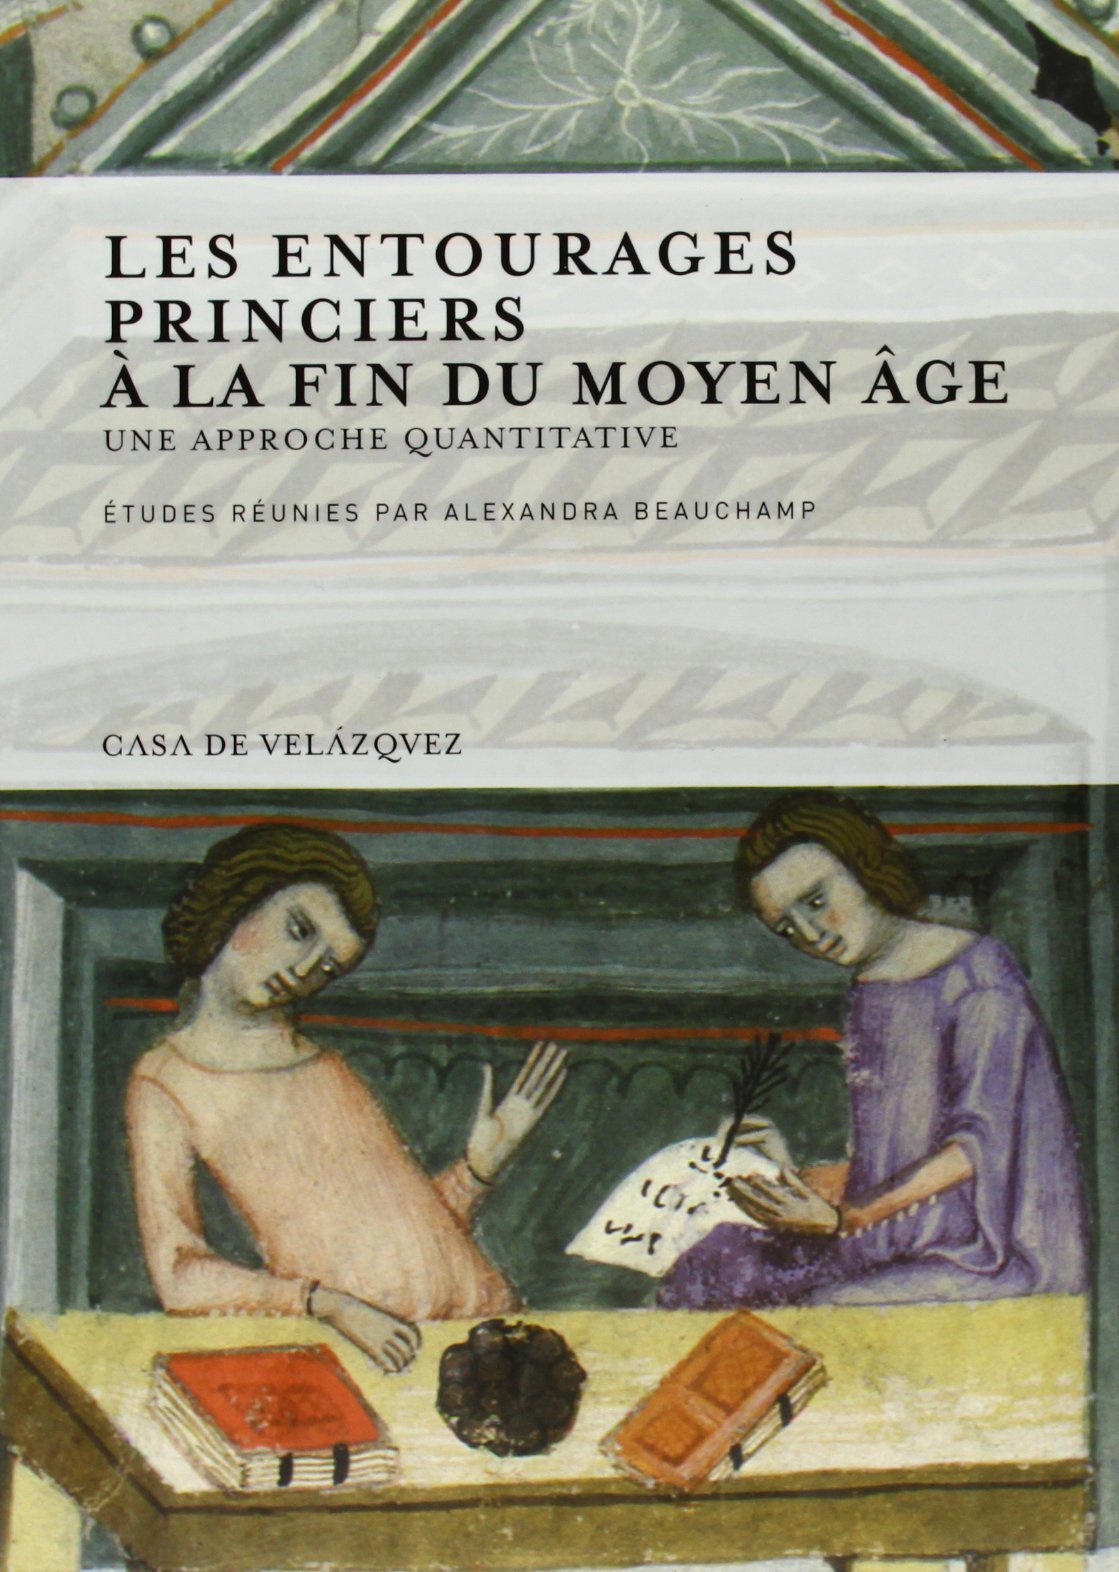 Les entourages princiers à la fin du Moyen Âge. Une approche quantitative, 2013, 222 p.